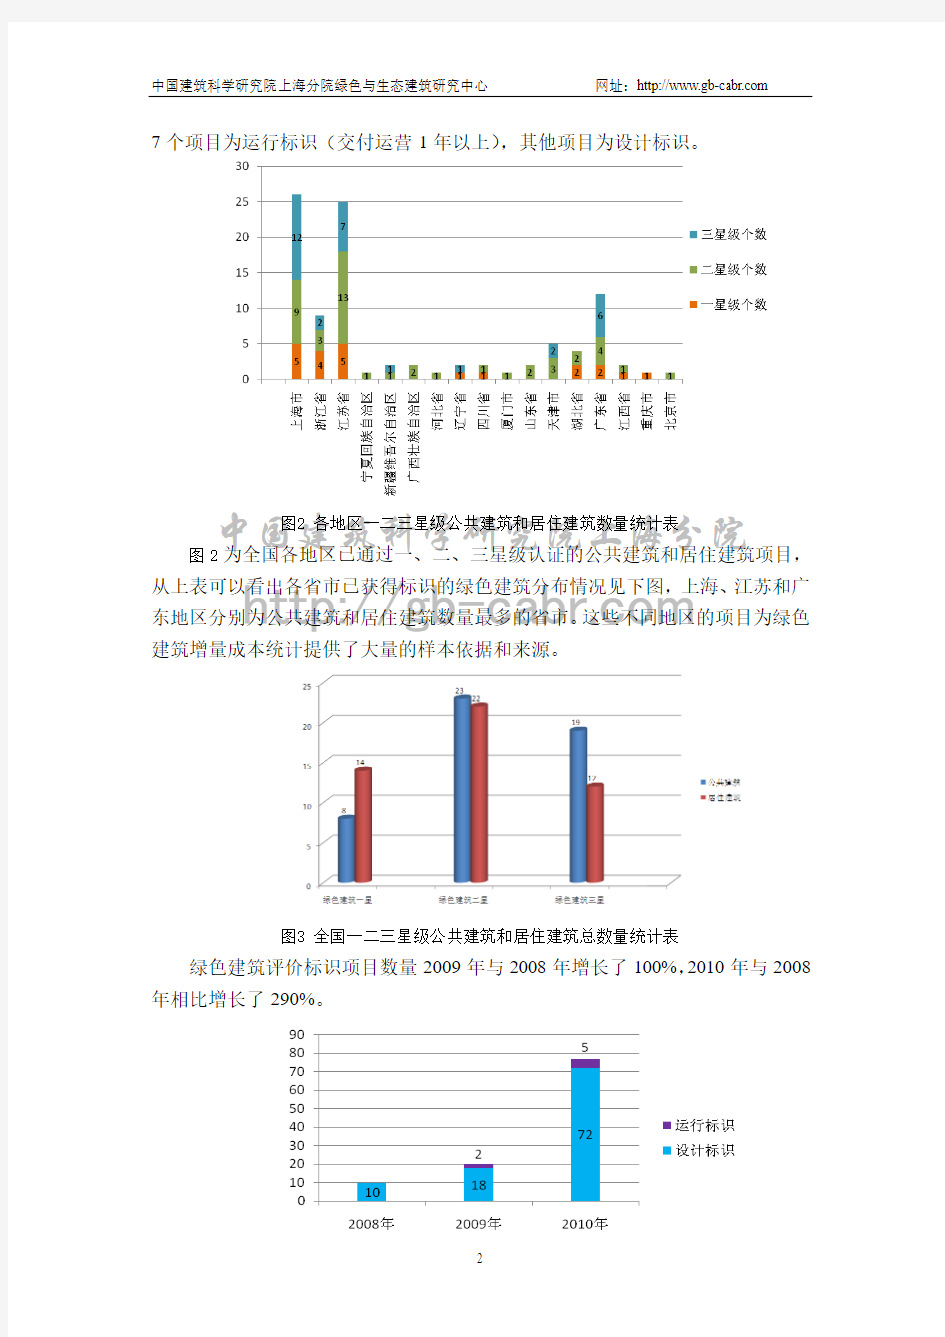 当前中国绿色建筑增量成本统计报告论文